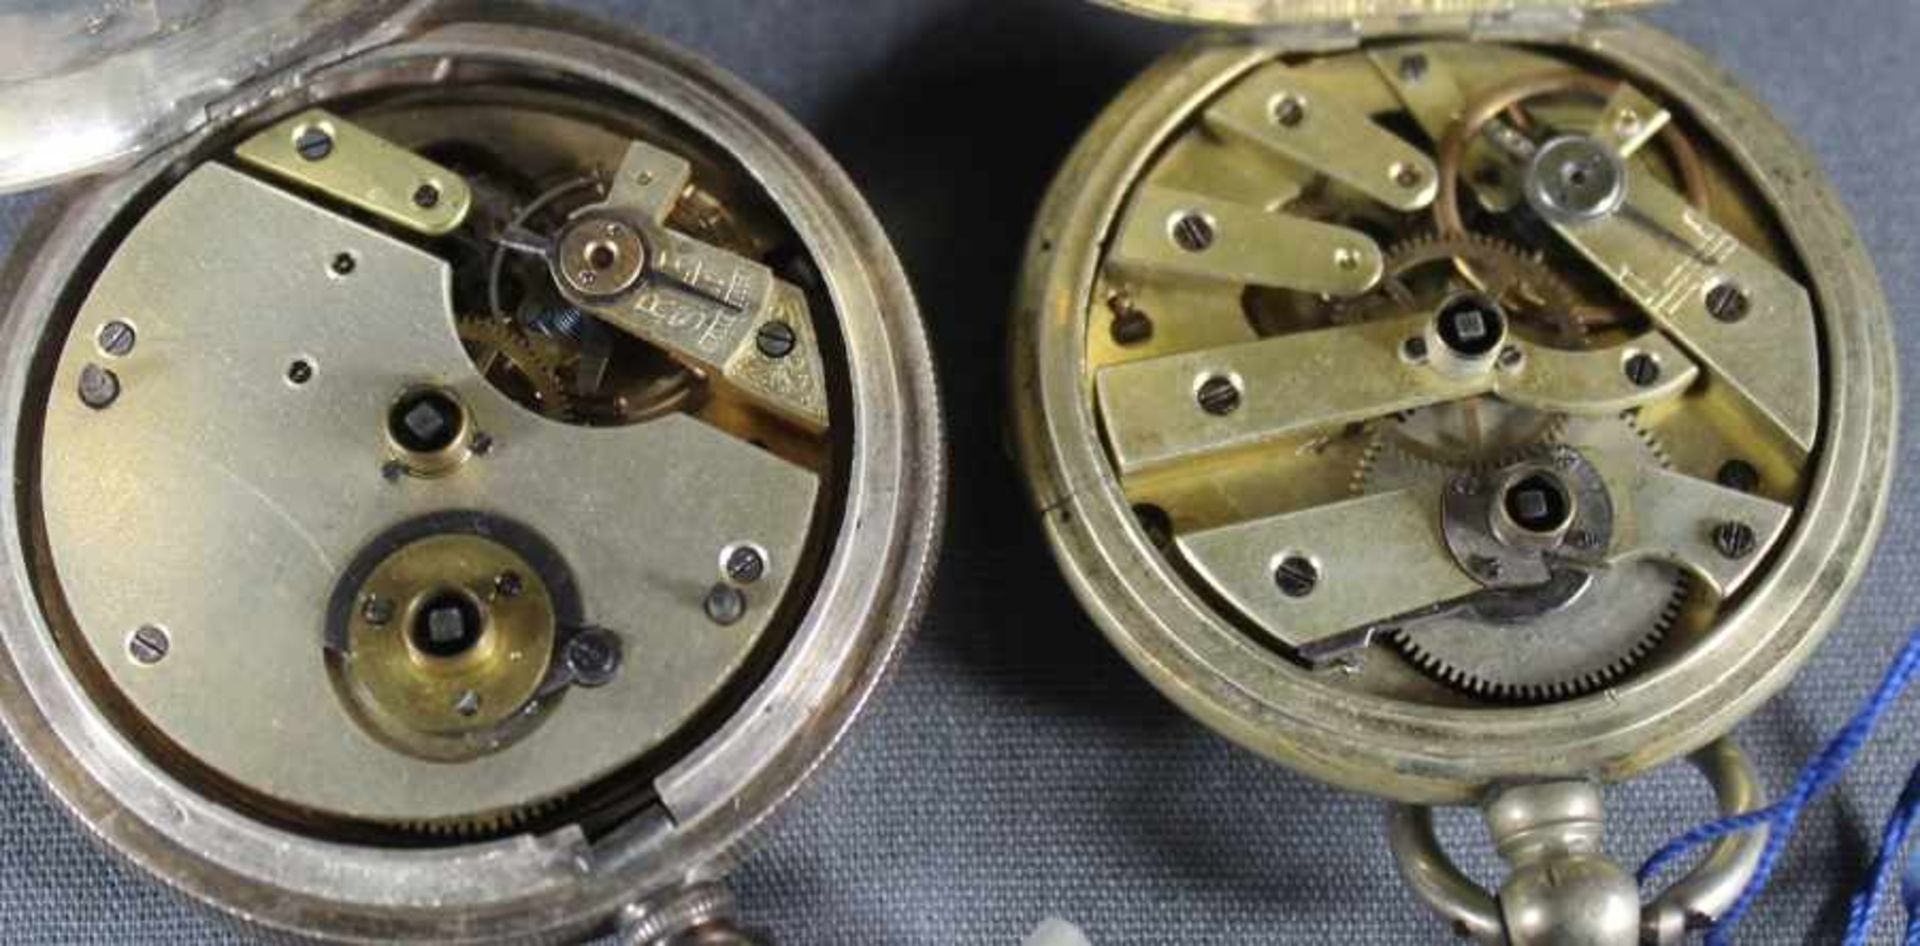 2 Taschenuhren Silber, punziert, weiße Zifferblätter mit schwarzen römischen Zahlen, kleine Sekunde, - Bild 3 aus 3